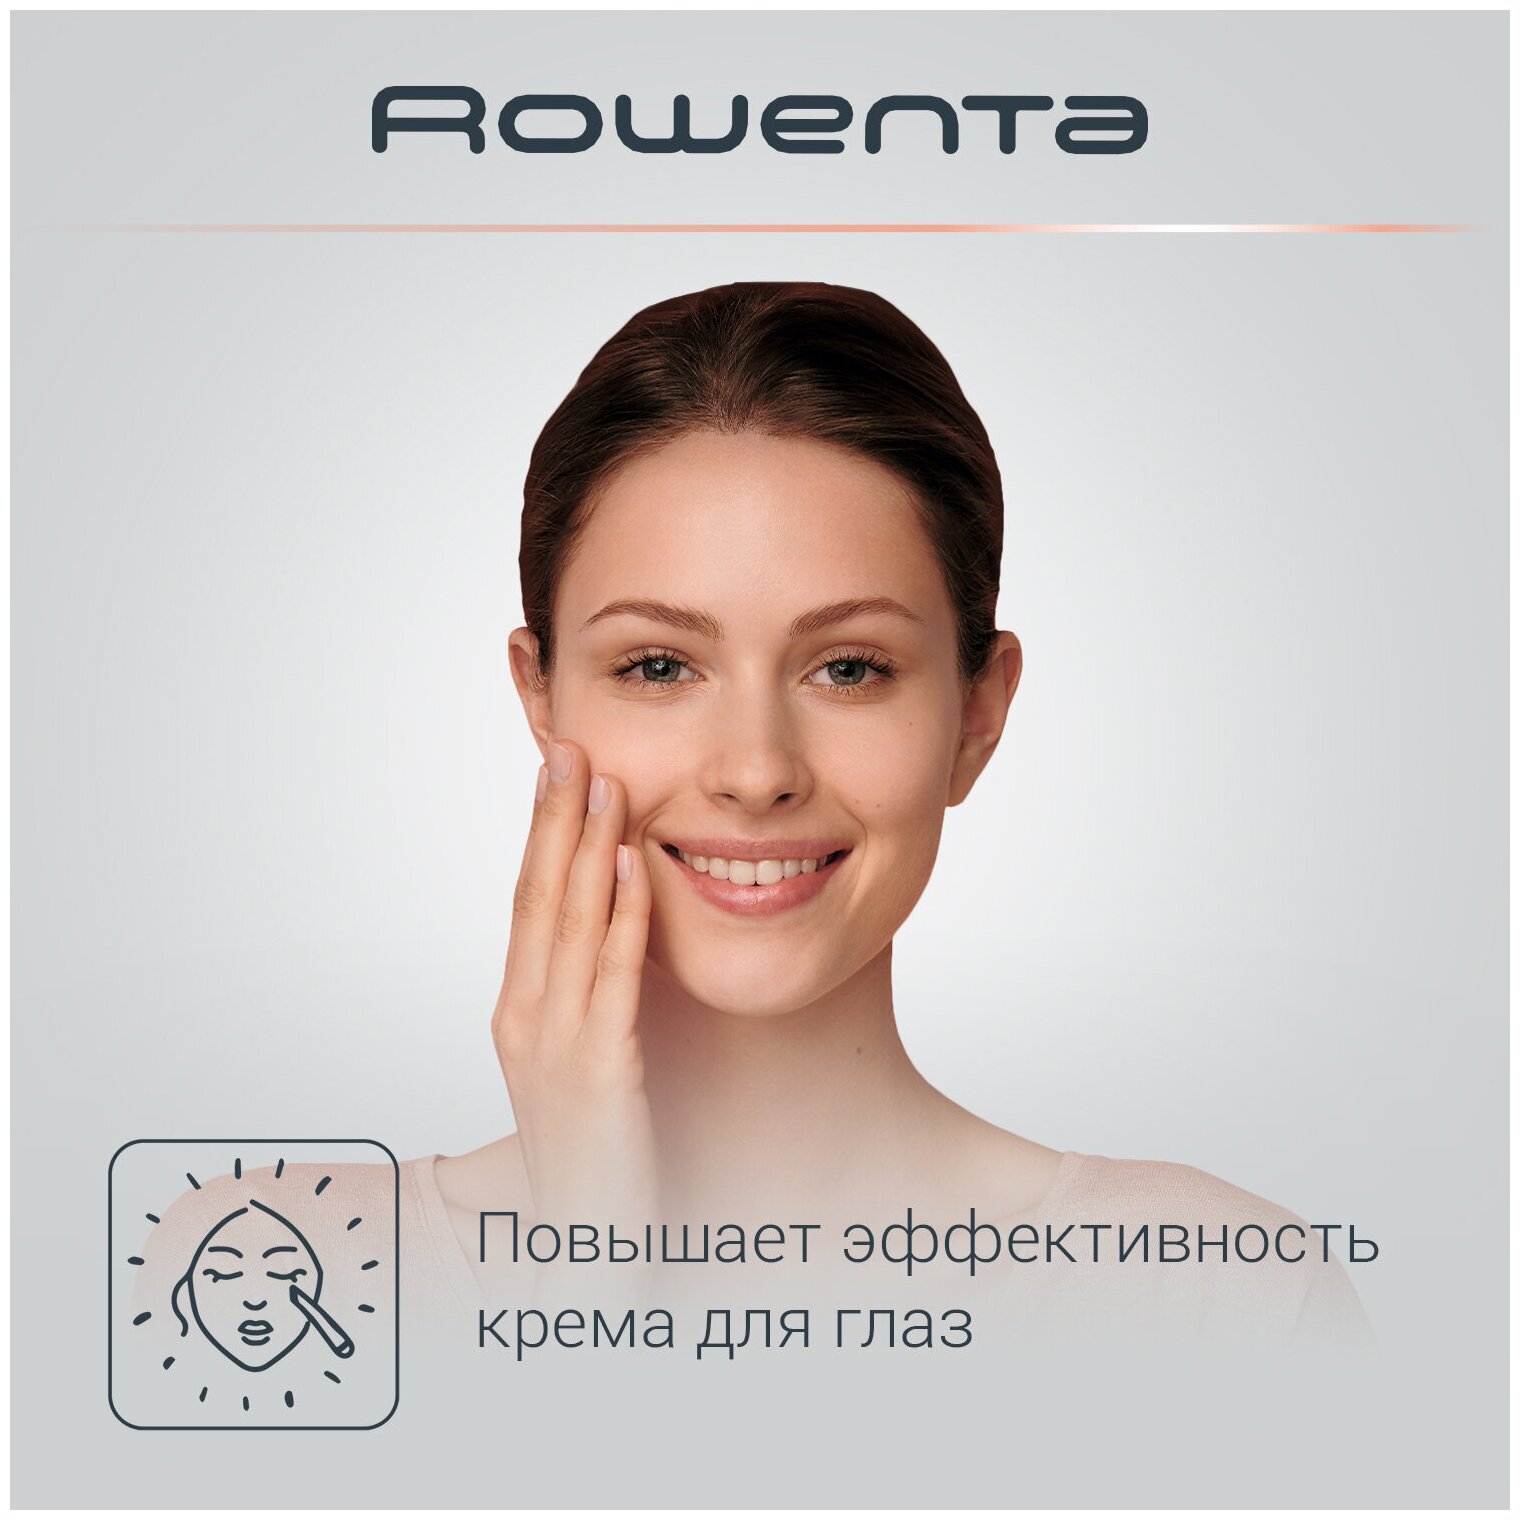 Прибор для чистки и массажа лица Rowenta - фото №3